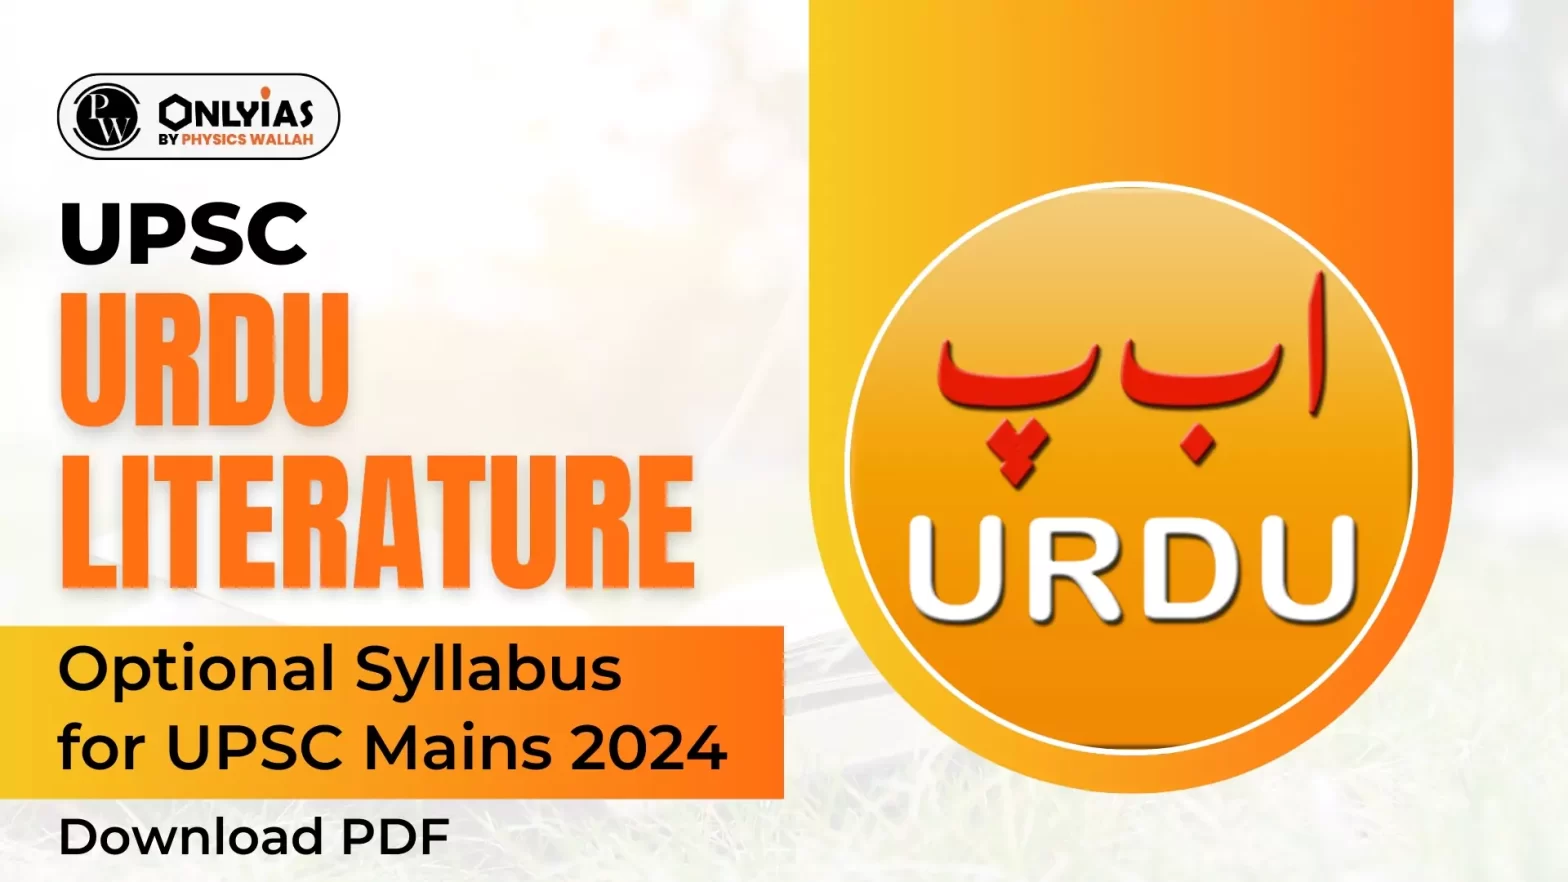 UPSC Urdu Literature Optional Syllabus For Mains 2024, Download PDF